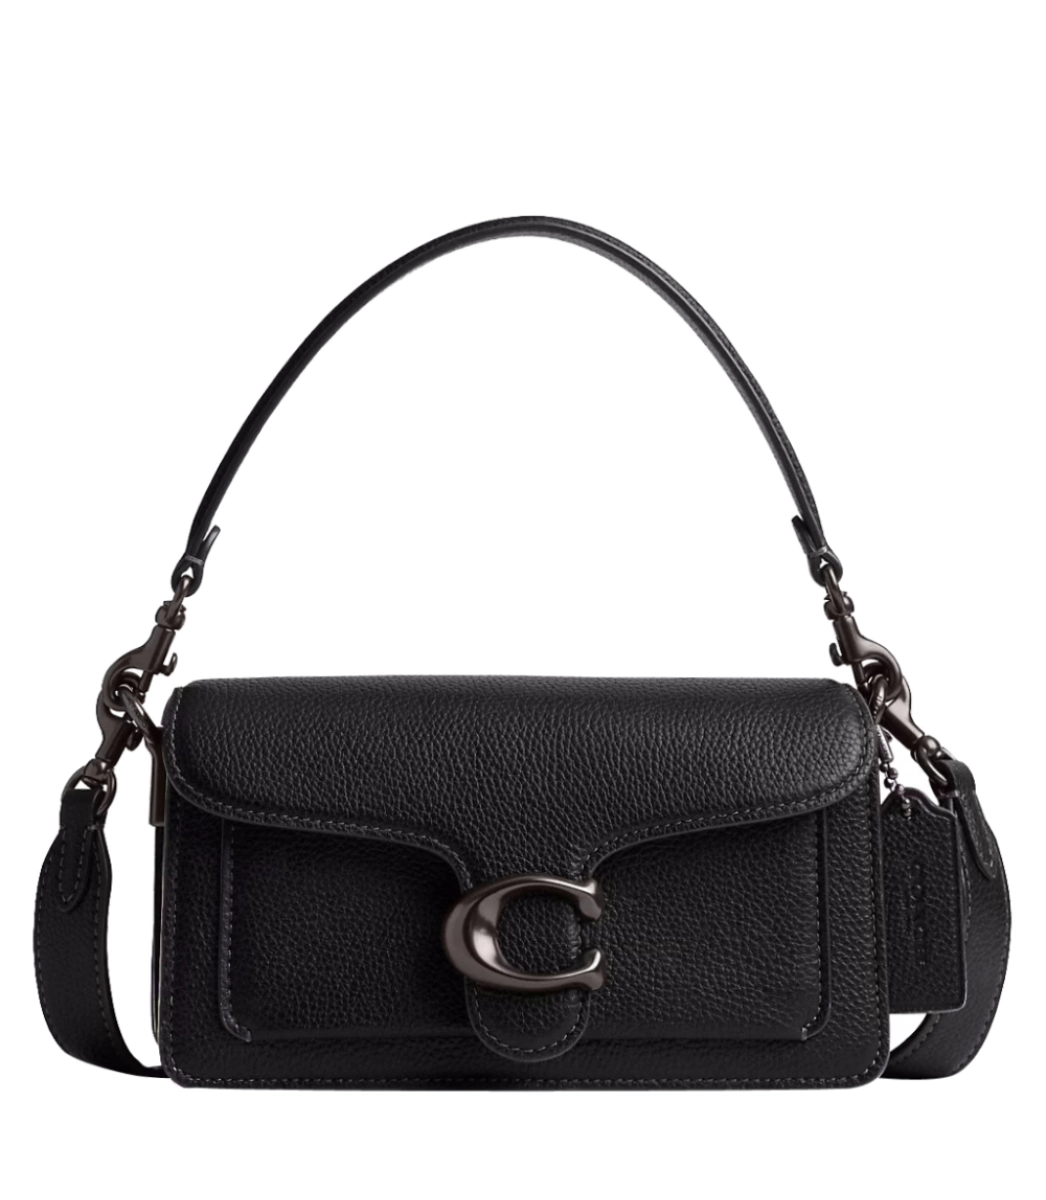 New Coach chain straps : r/handbags